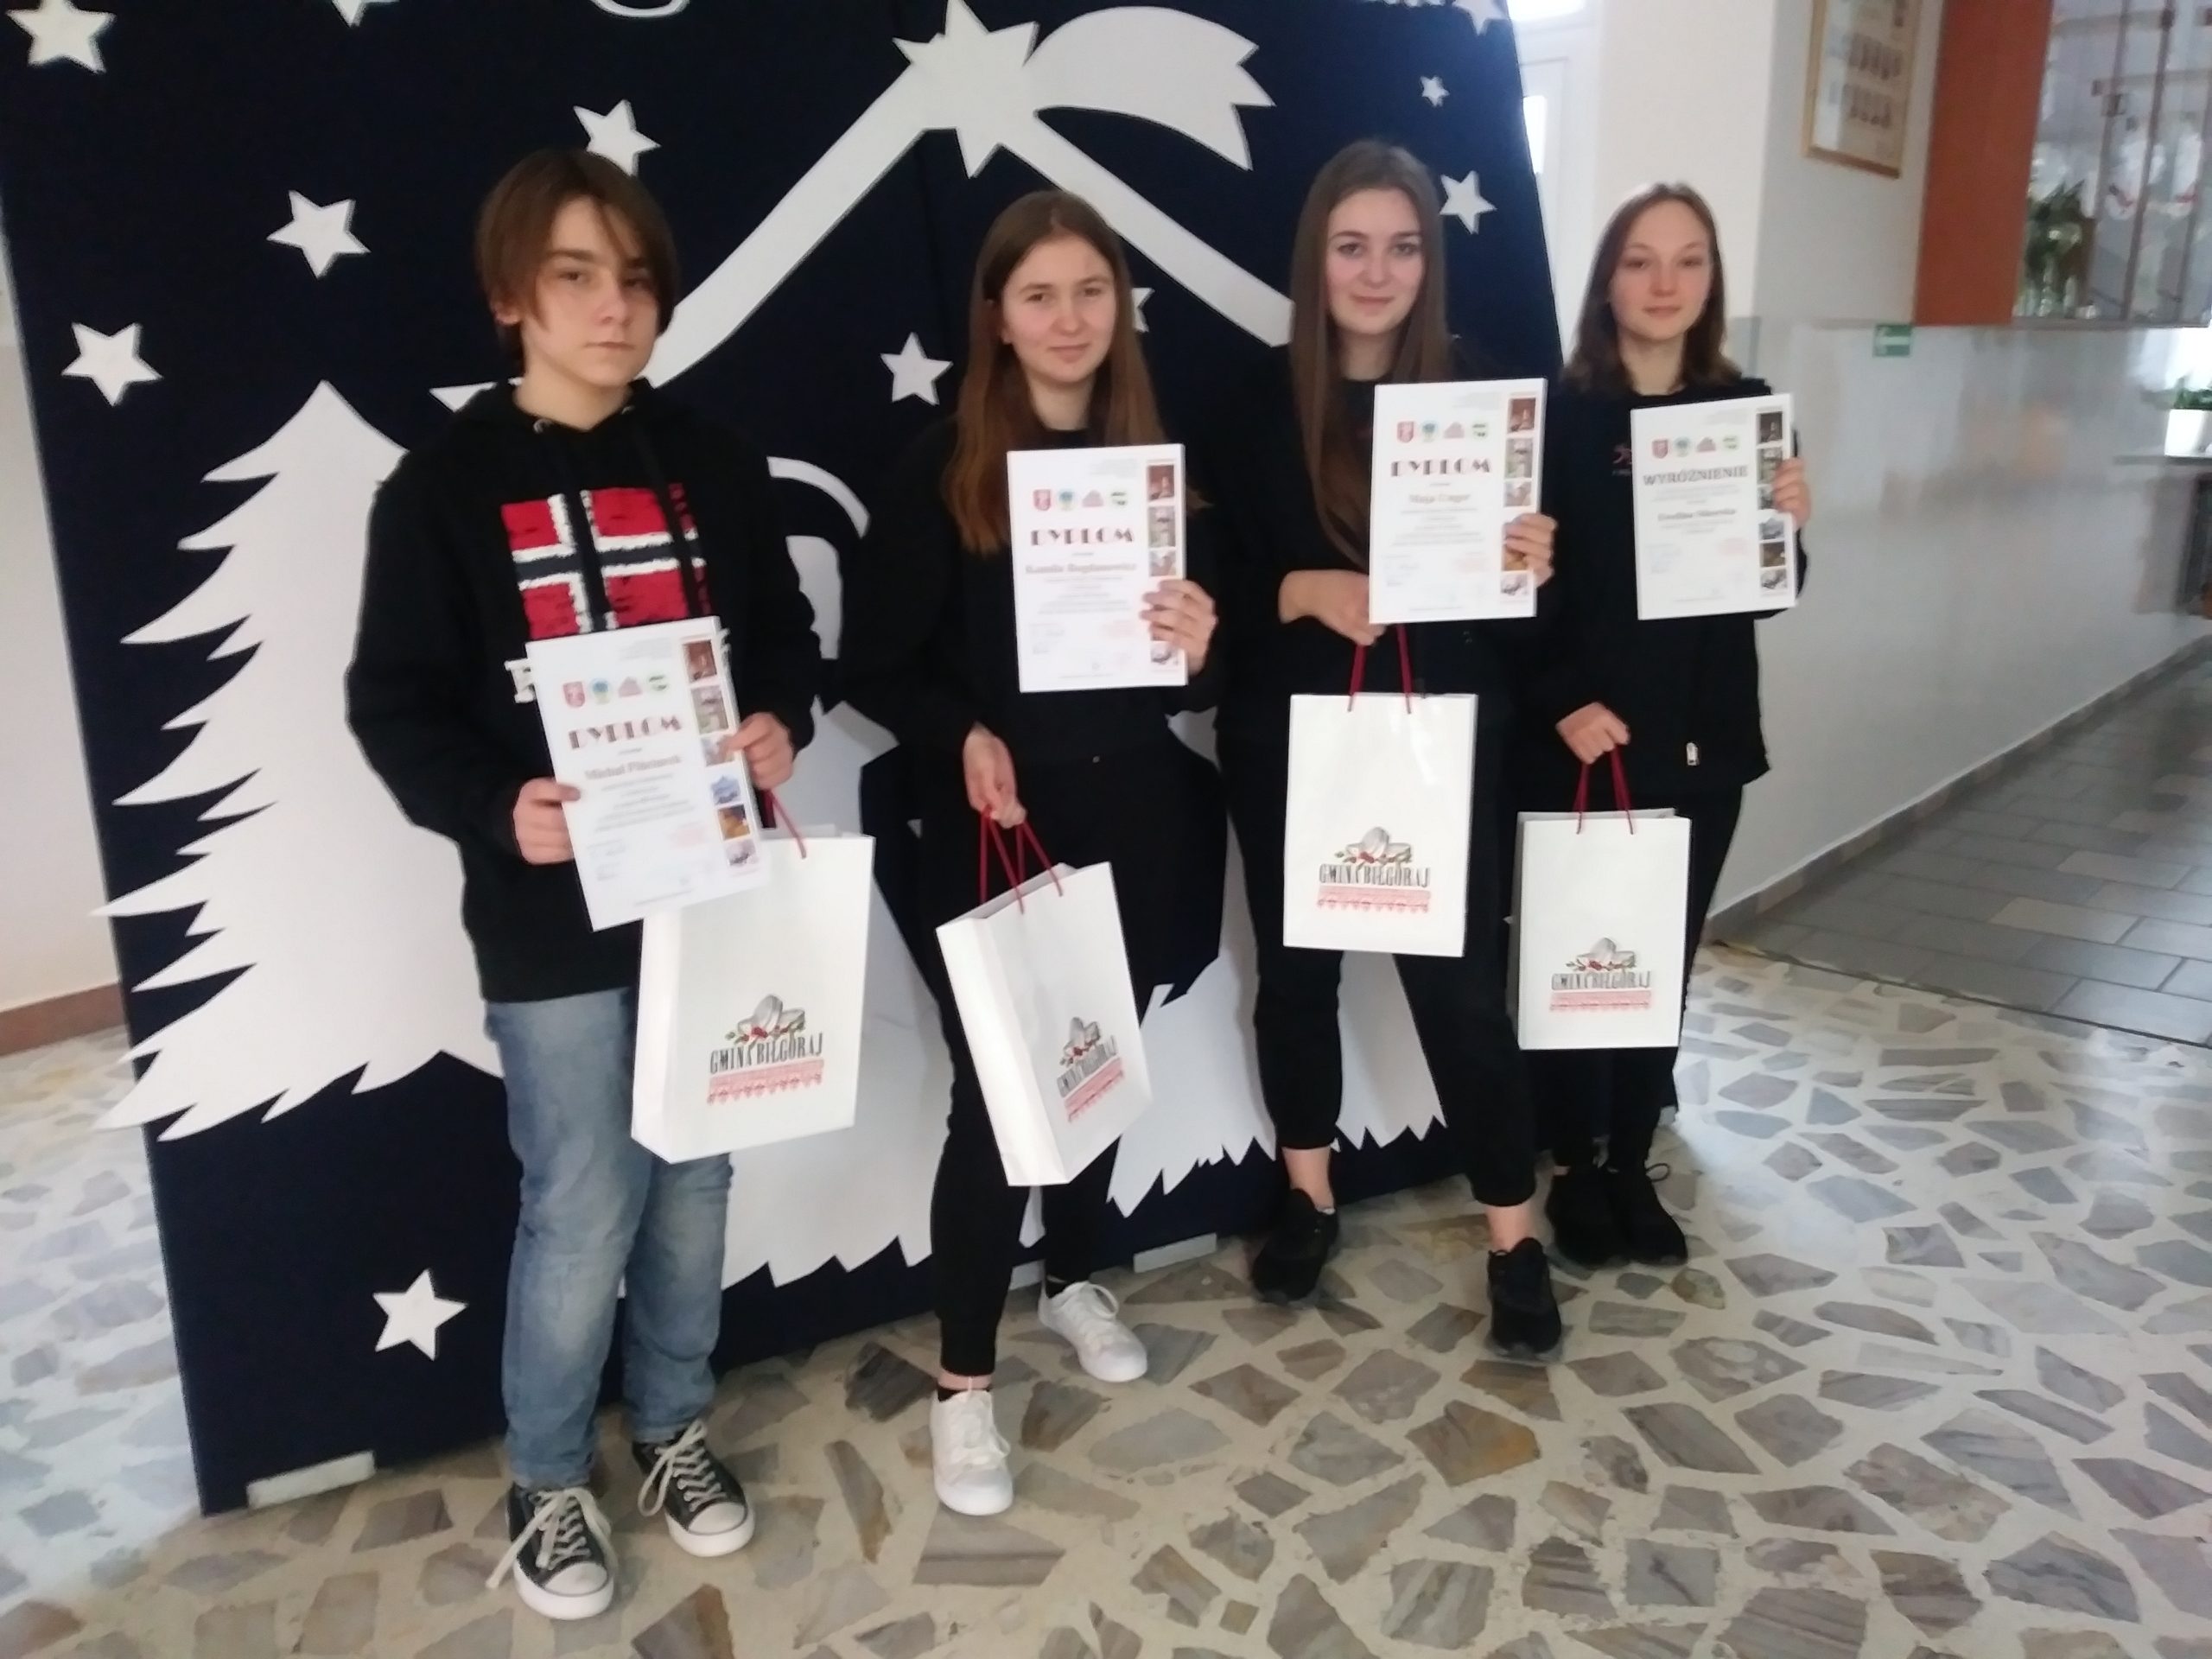 Nasi uczniowie laureatami XXXII Powiatowego Konkursu o Ziemi Biłgorajskiej „Ziemia Biłgorajska w obiektywie”.